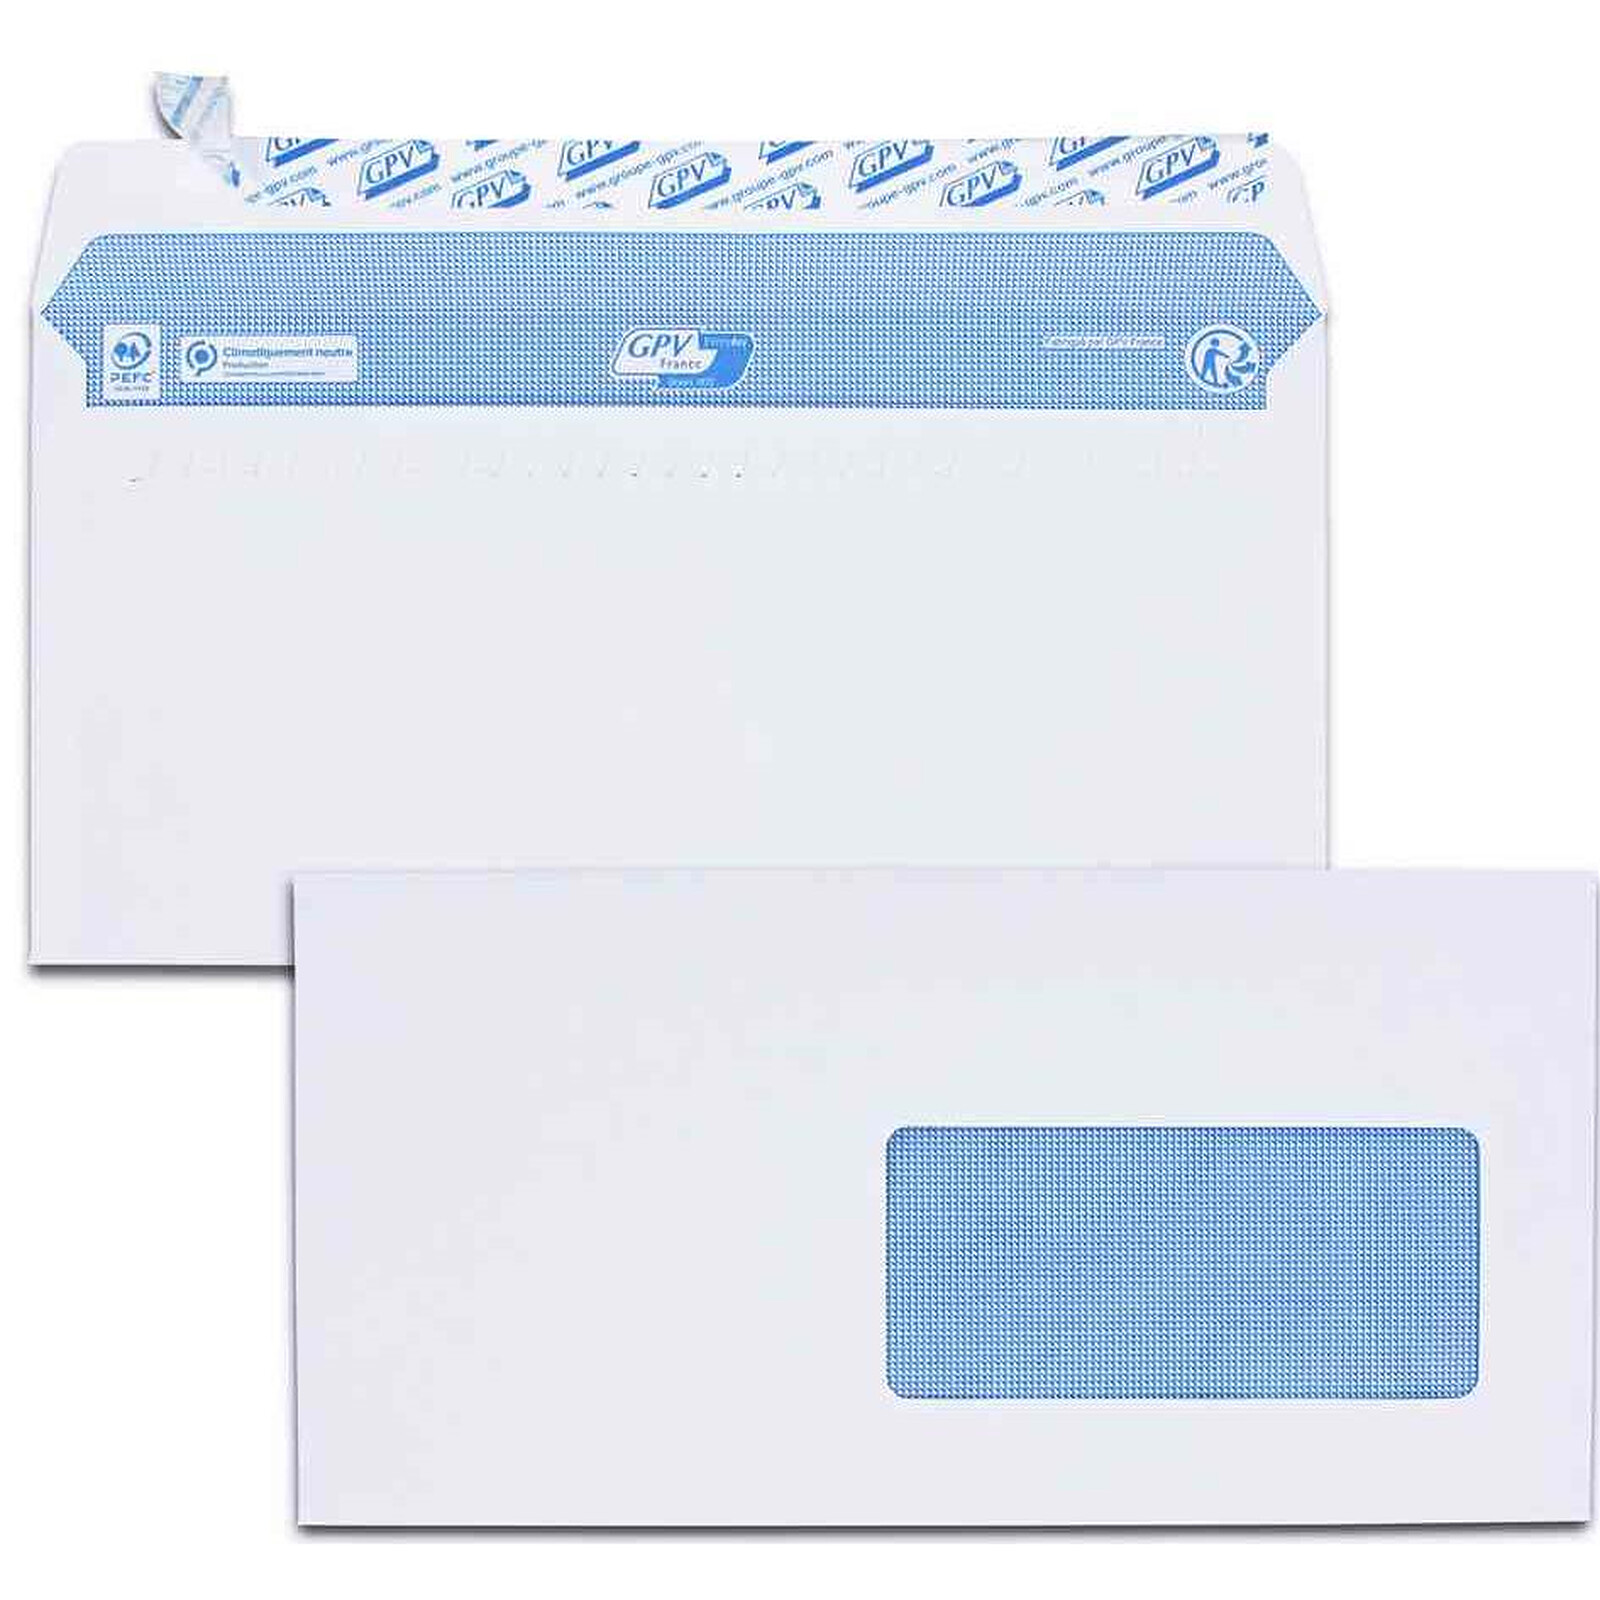 Enveloppes pour élection - paquet de 100 enveloppes bleues non gommées